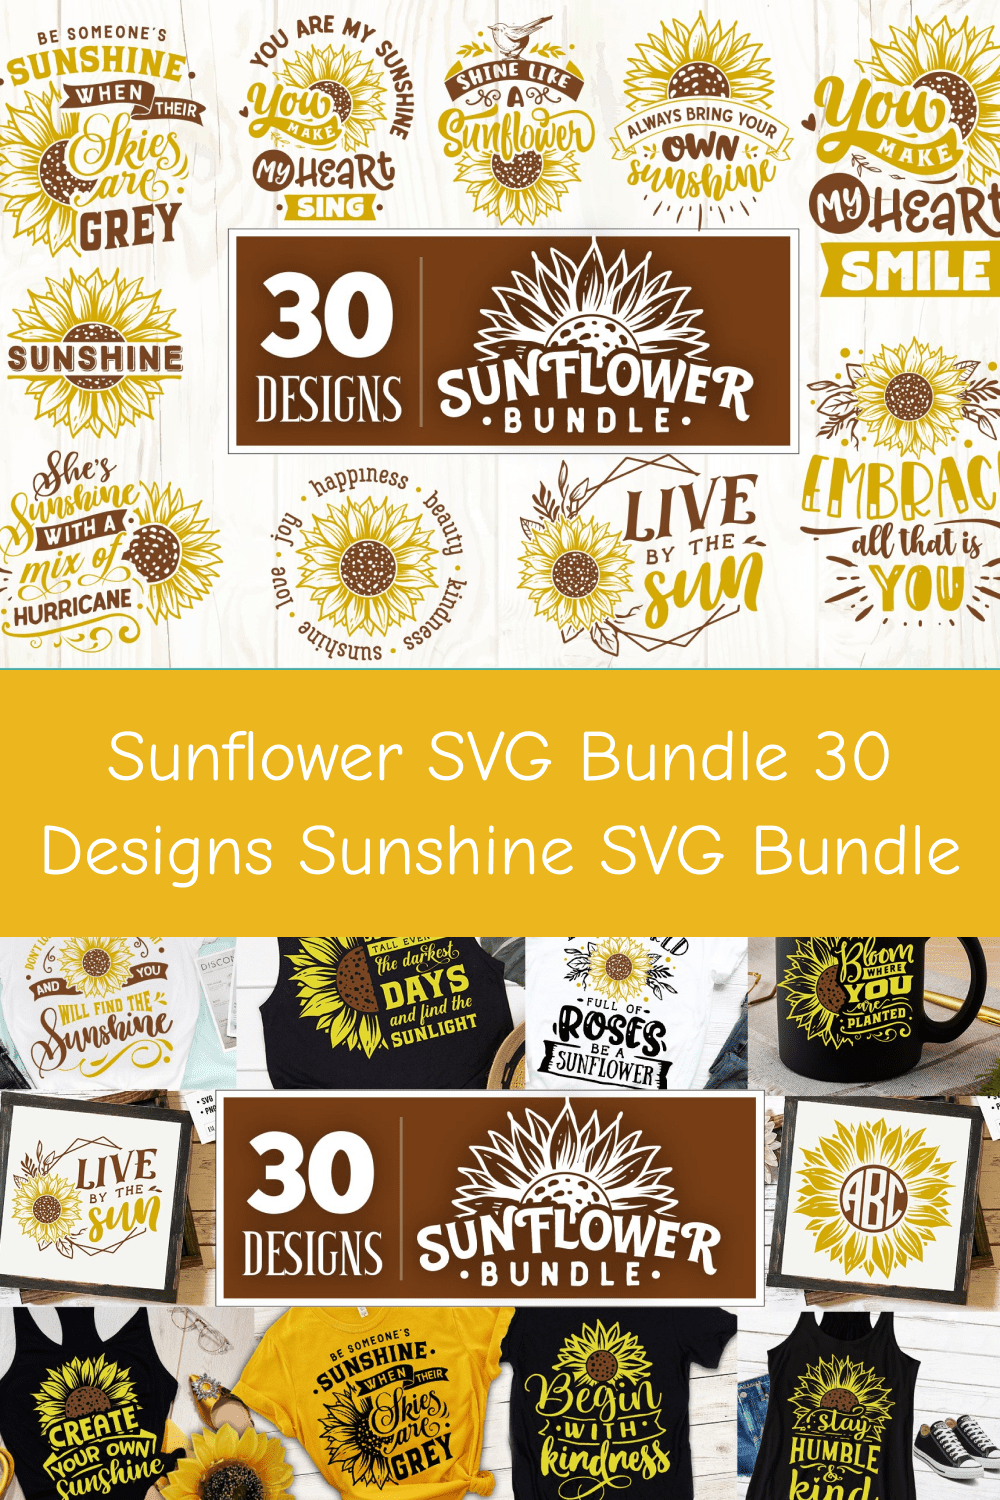 03 sunflower svg bundle 30 designs sunshine svg bundle pinterest